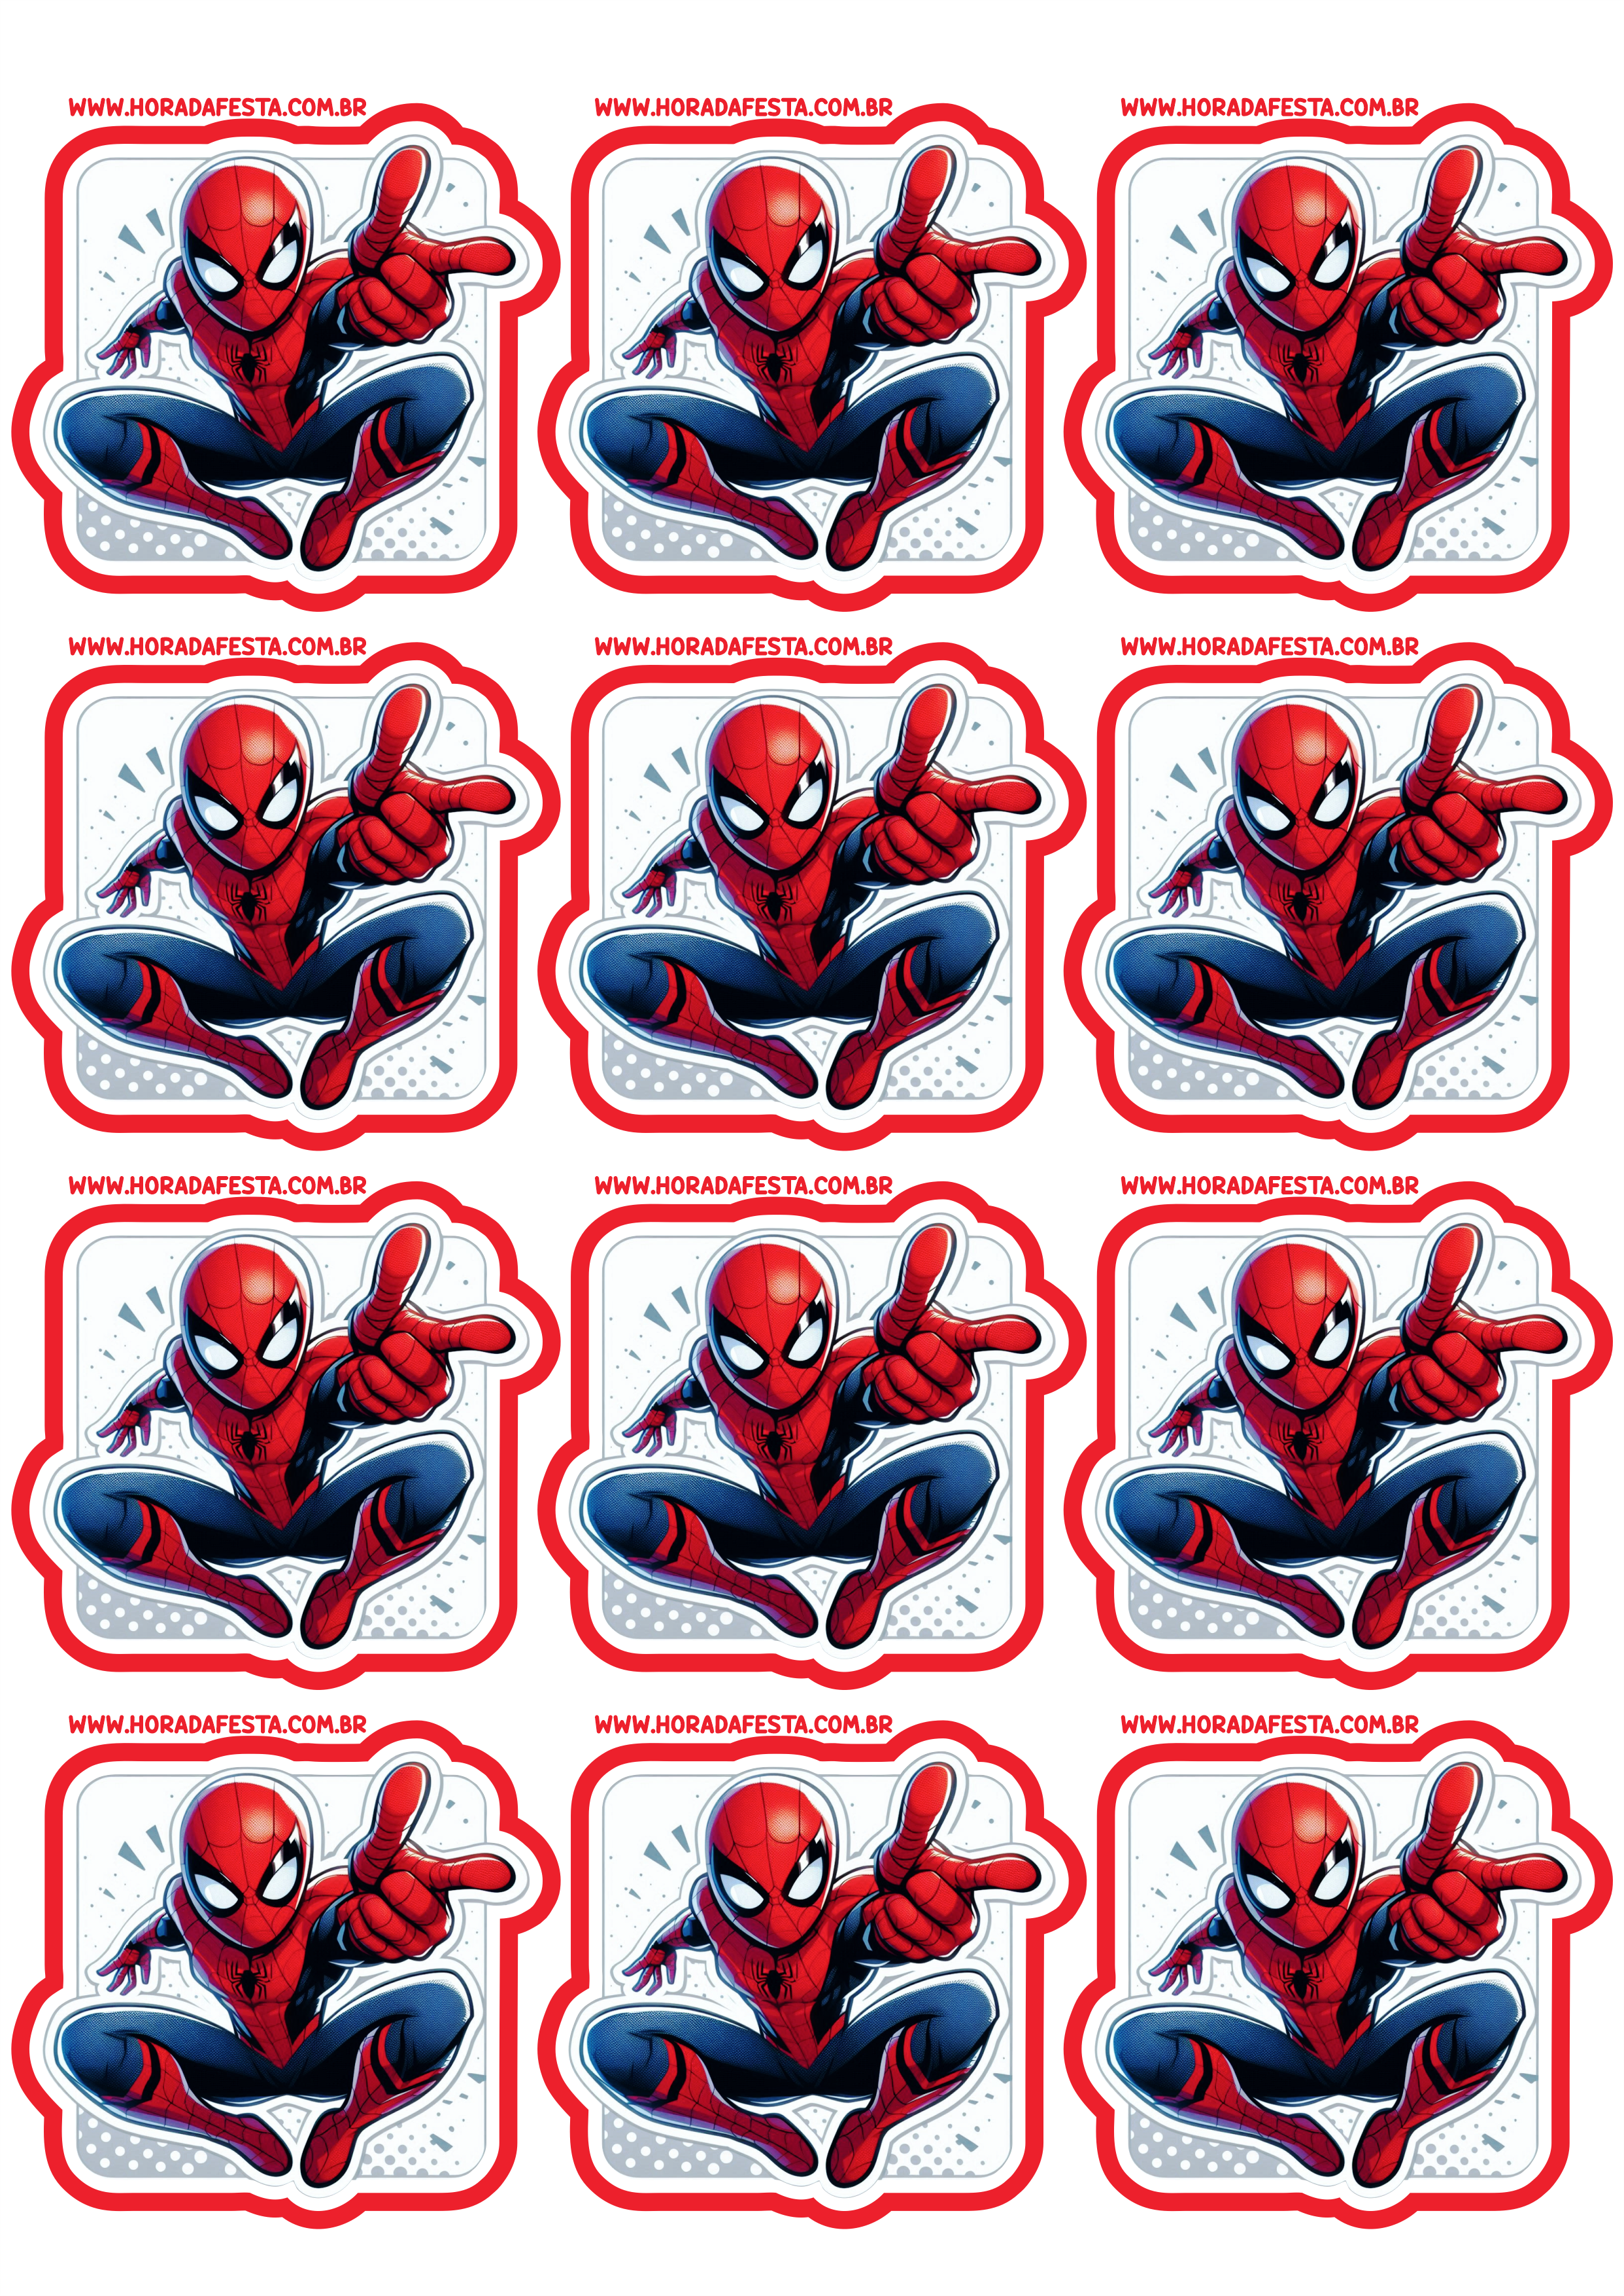 Spider-Man adesivo tag sticker decoração de aniversário e festa infantis com tema do Homem-Aranha personalizado 12 imagens png